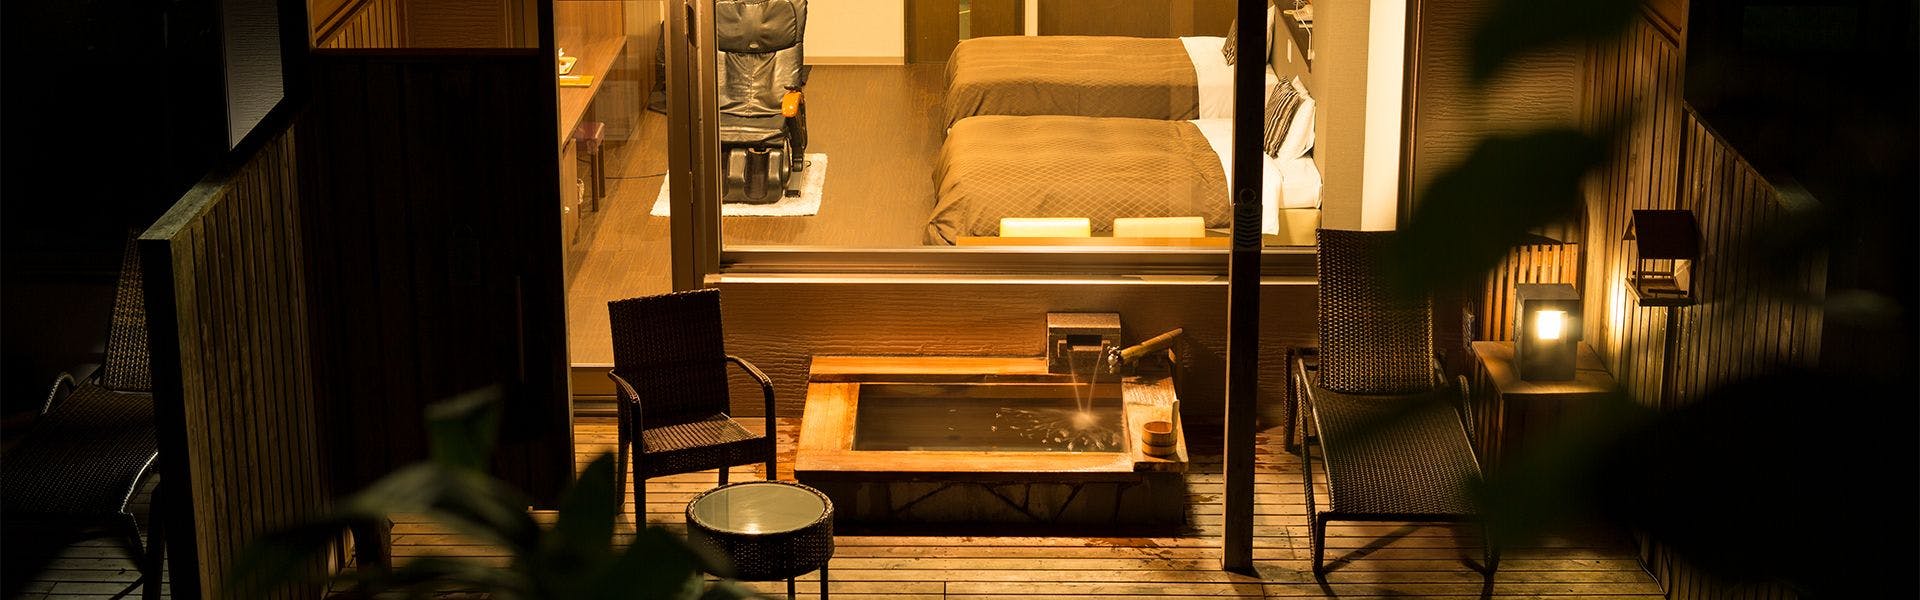 記念日におすすめのホテル・【小樽朝里クラッセホテル】 の空室状況を確認するの写真1